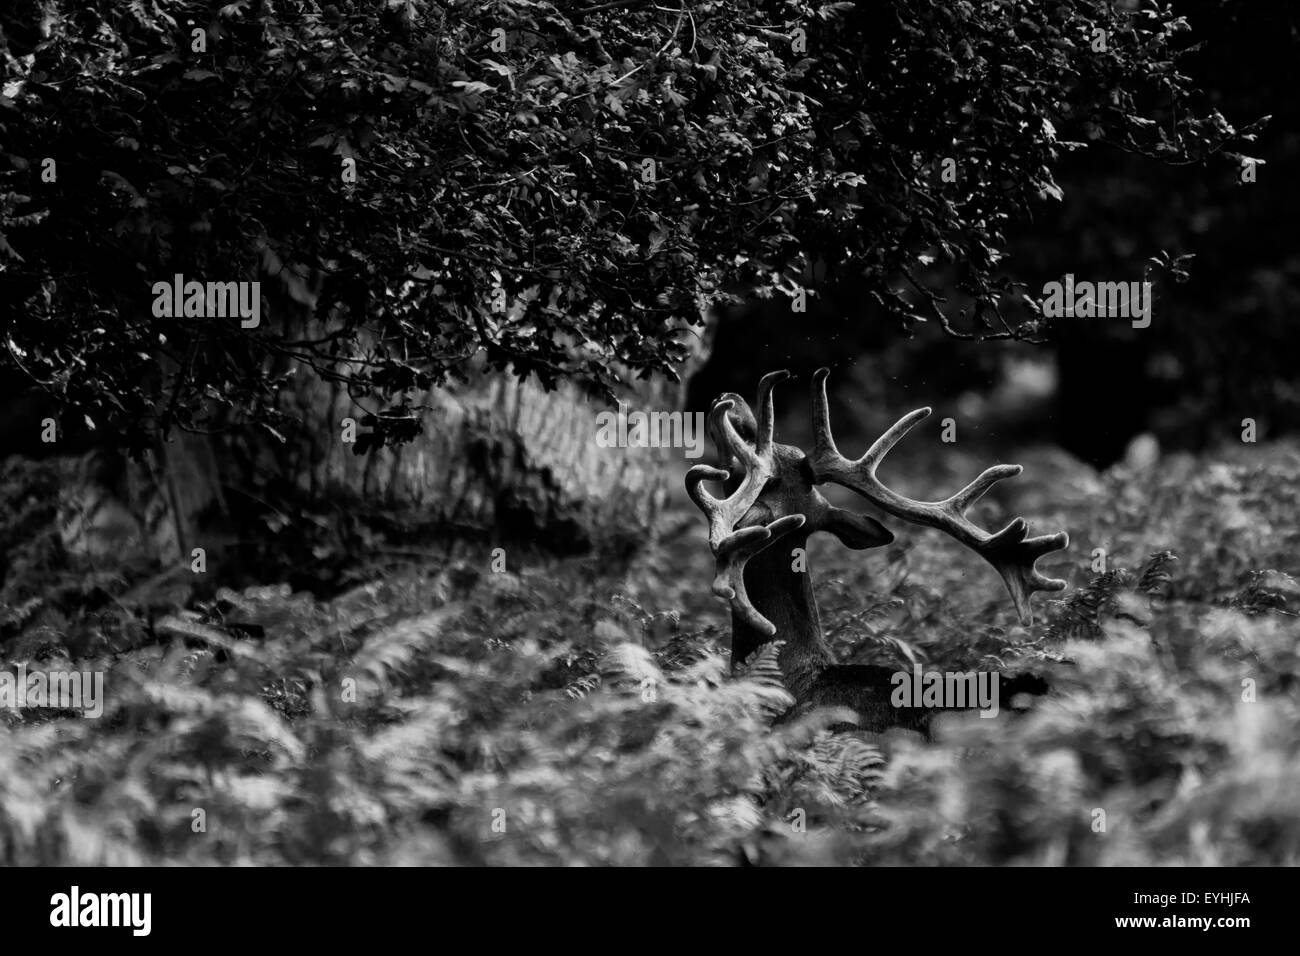 Richmond Park cervi, fauna selvatica free roaming fotografato in bianco e nero. Foto Stock